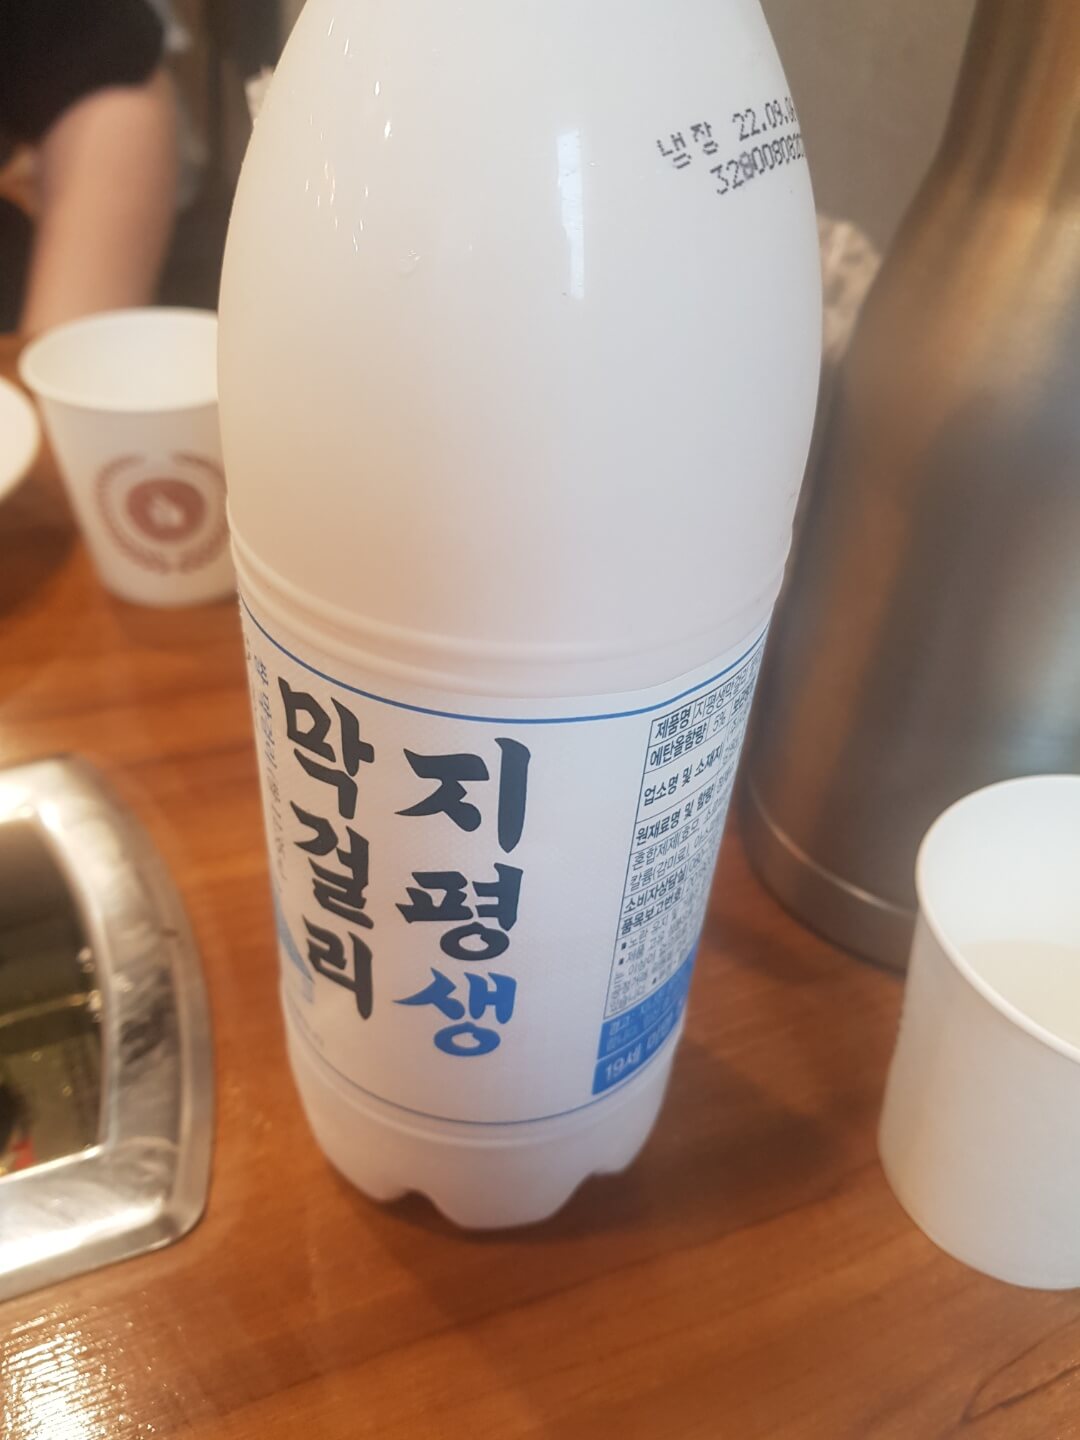 광진구 군자역 맛집 영미 오리탕 위치 리뷰 줄서서 먹는 오리탕 맛집